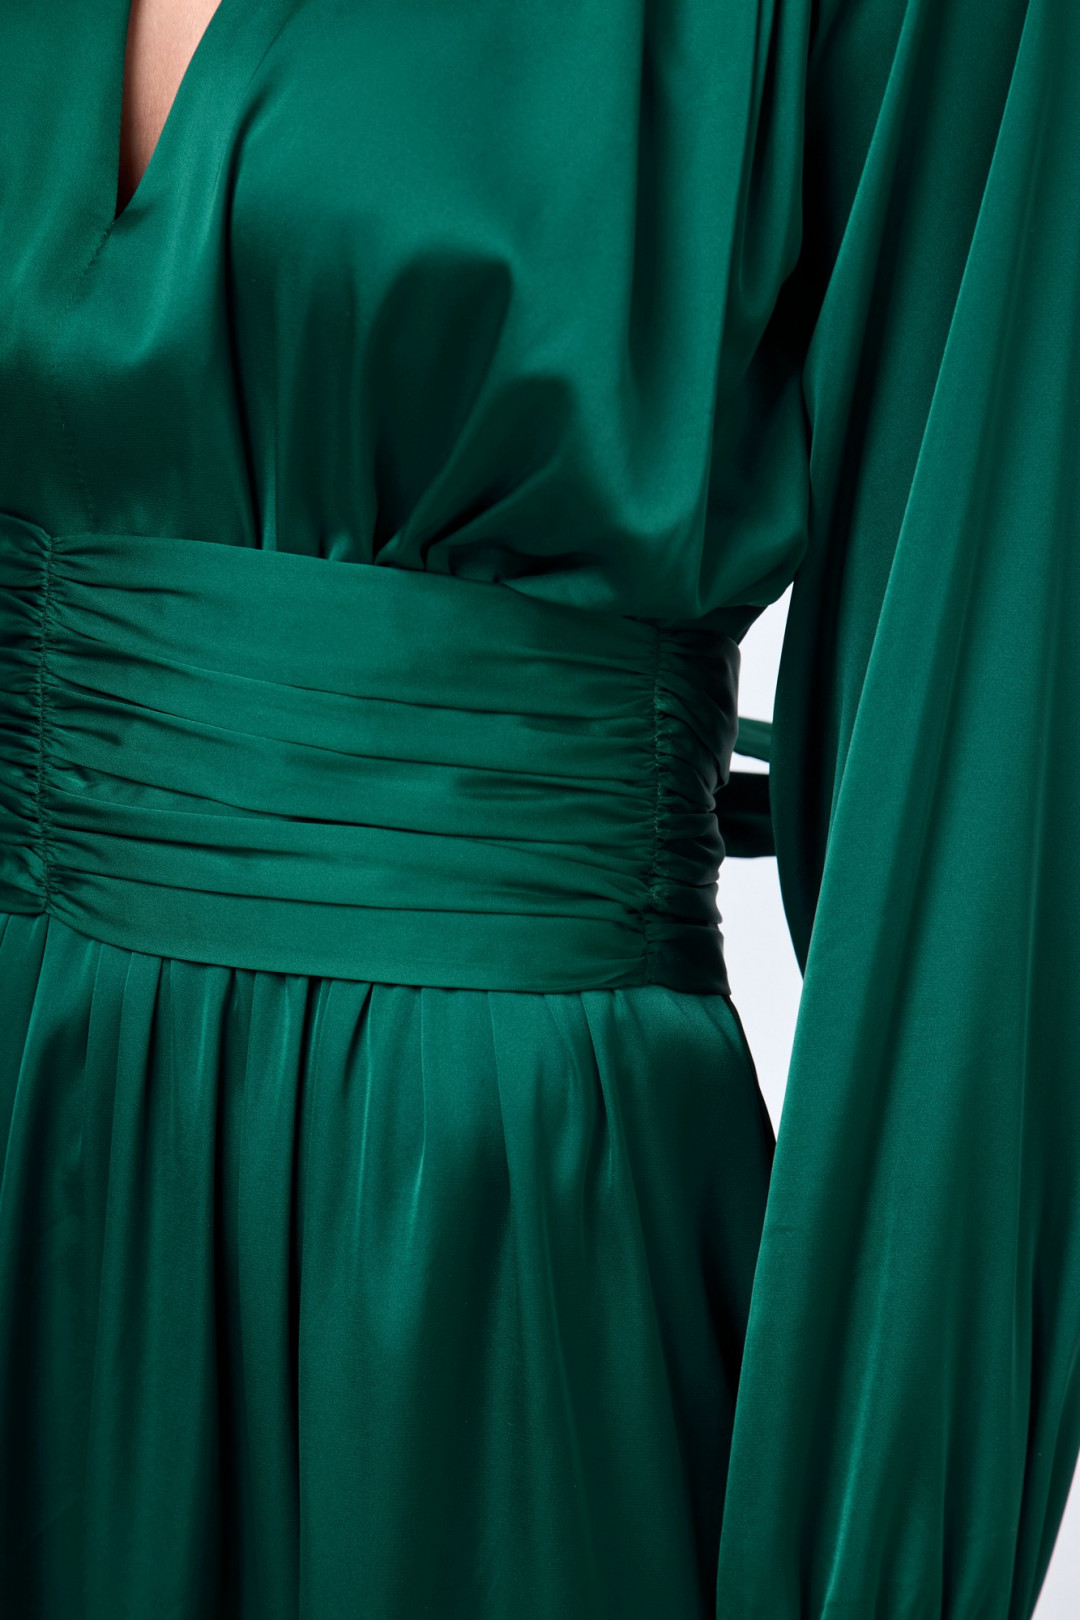 Платье Anelli 1204 зеленые тона